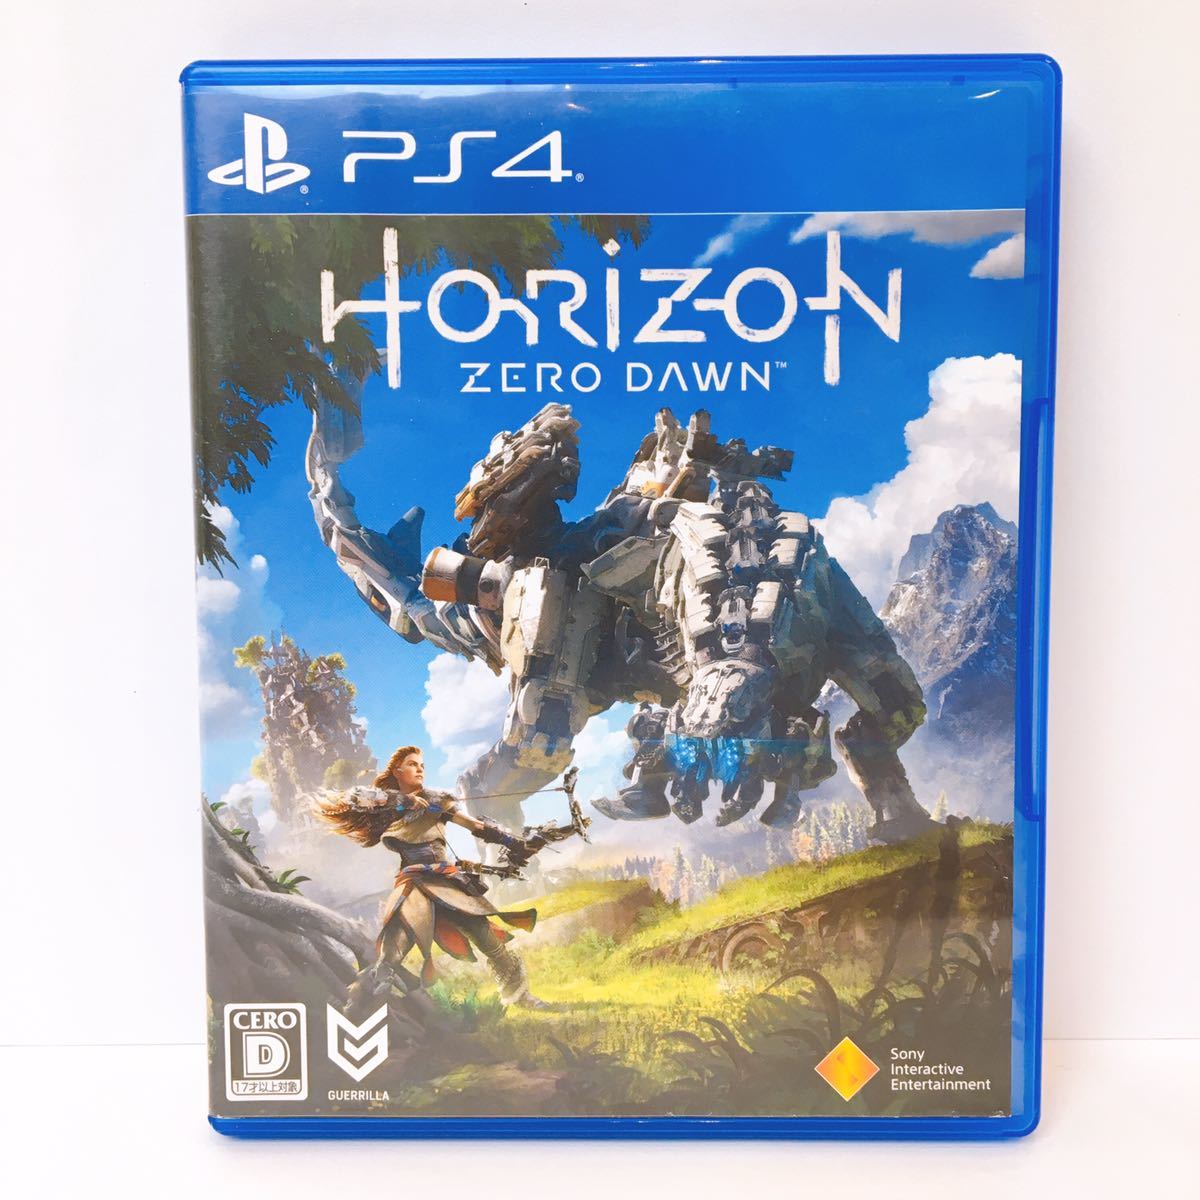 534円 品質は非常に良い PS4 Horizon Zero Dawn 通常版 中古 ソフト プレステ4 プレイステーション4 PlayStation4 SONY